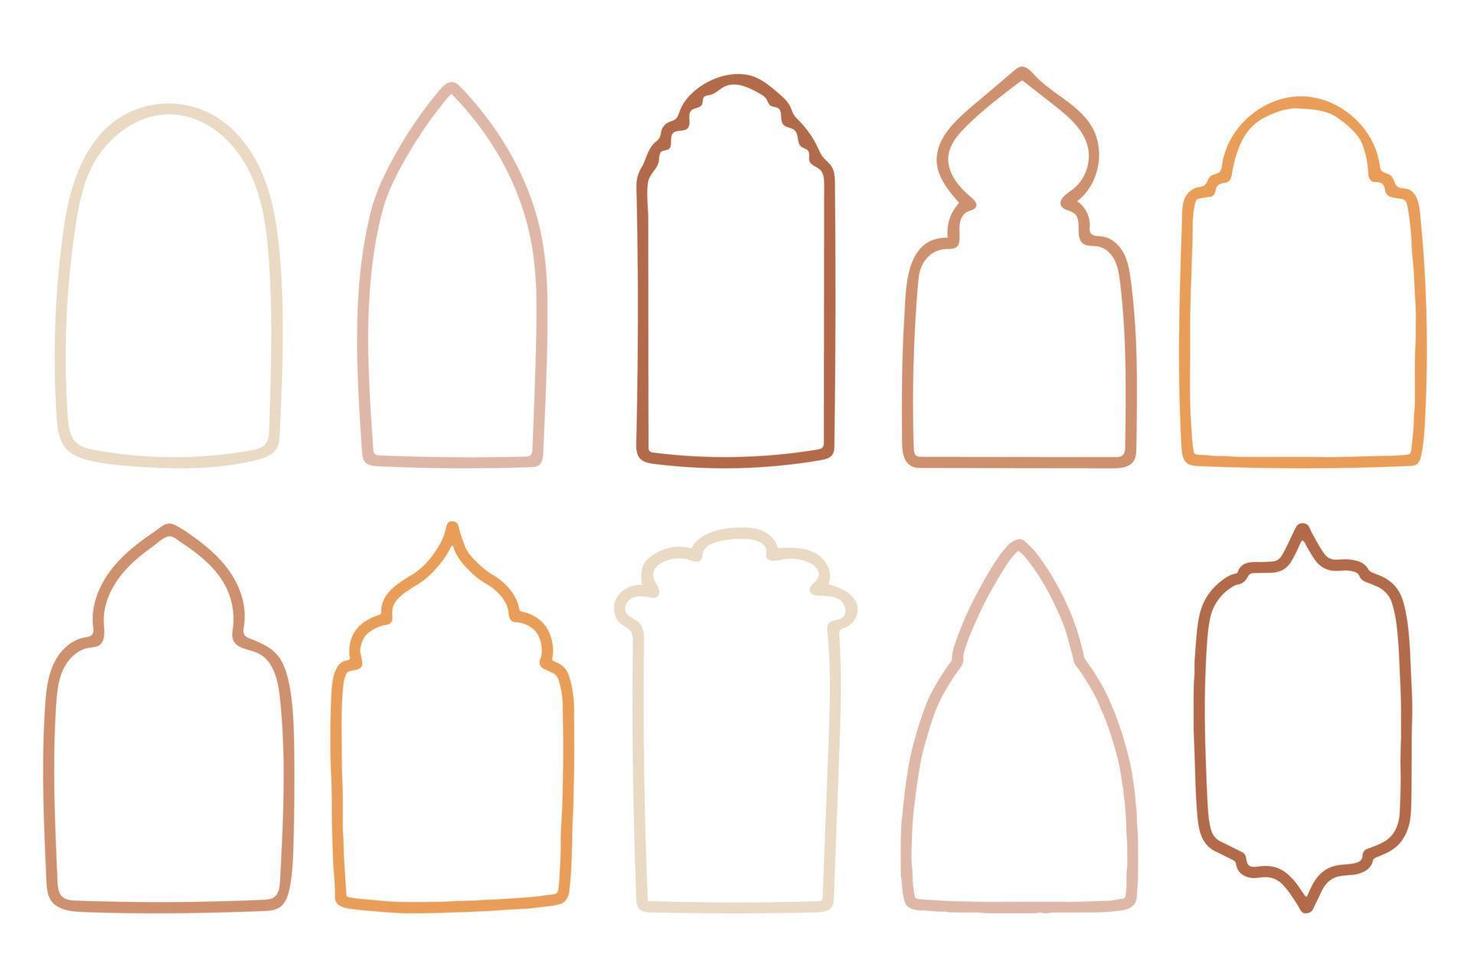 coleção de janelas e arcos islâmicos em estilo oriental com design boho moderno, lua, cúpula de mesquita e lanternas. ilustração vetorial. vetor